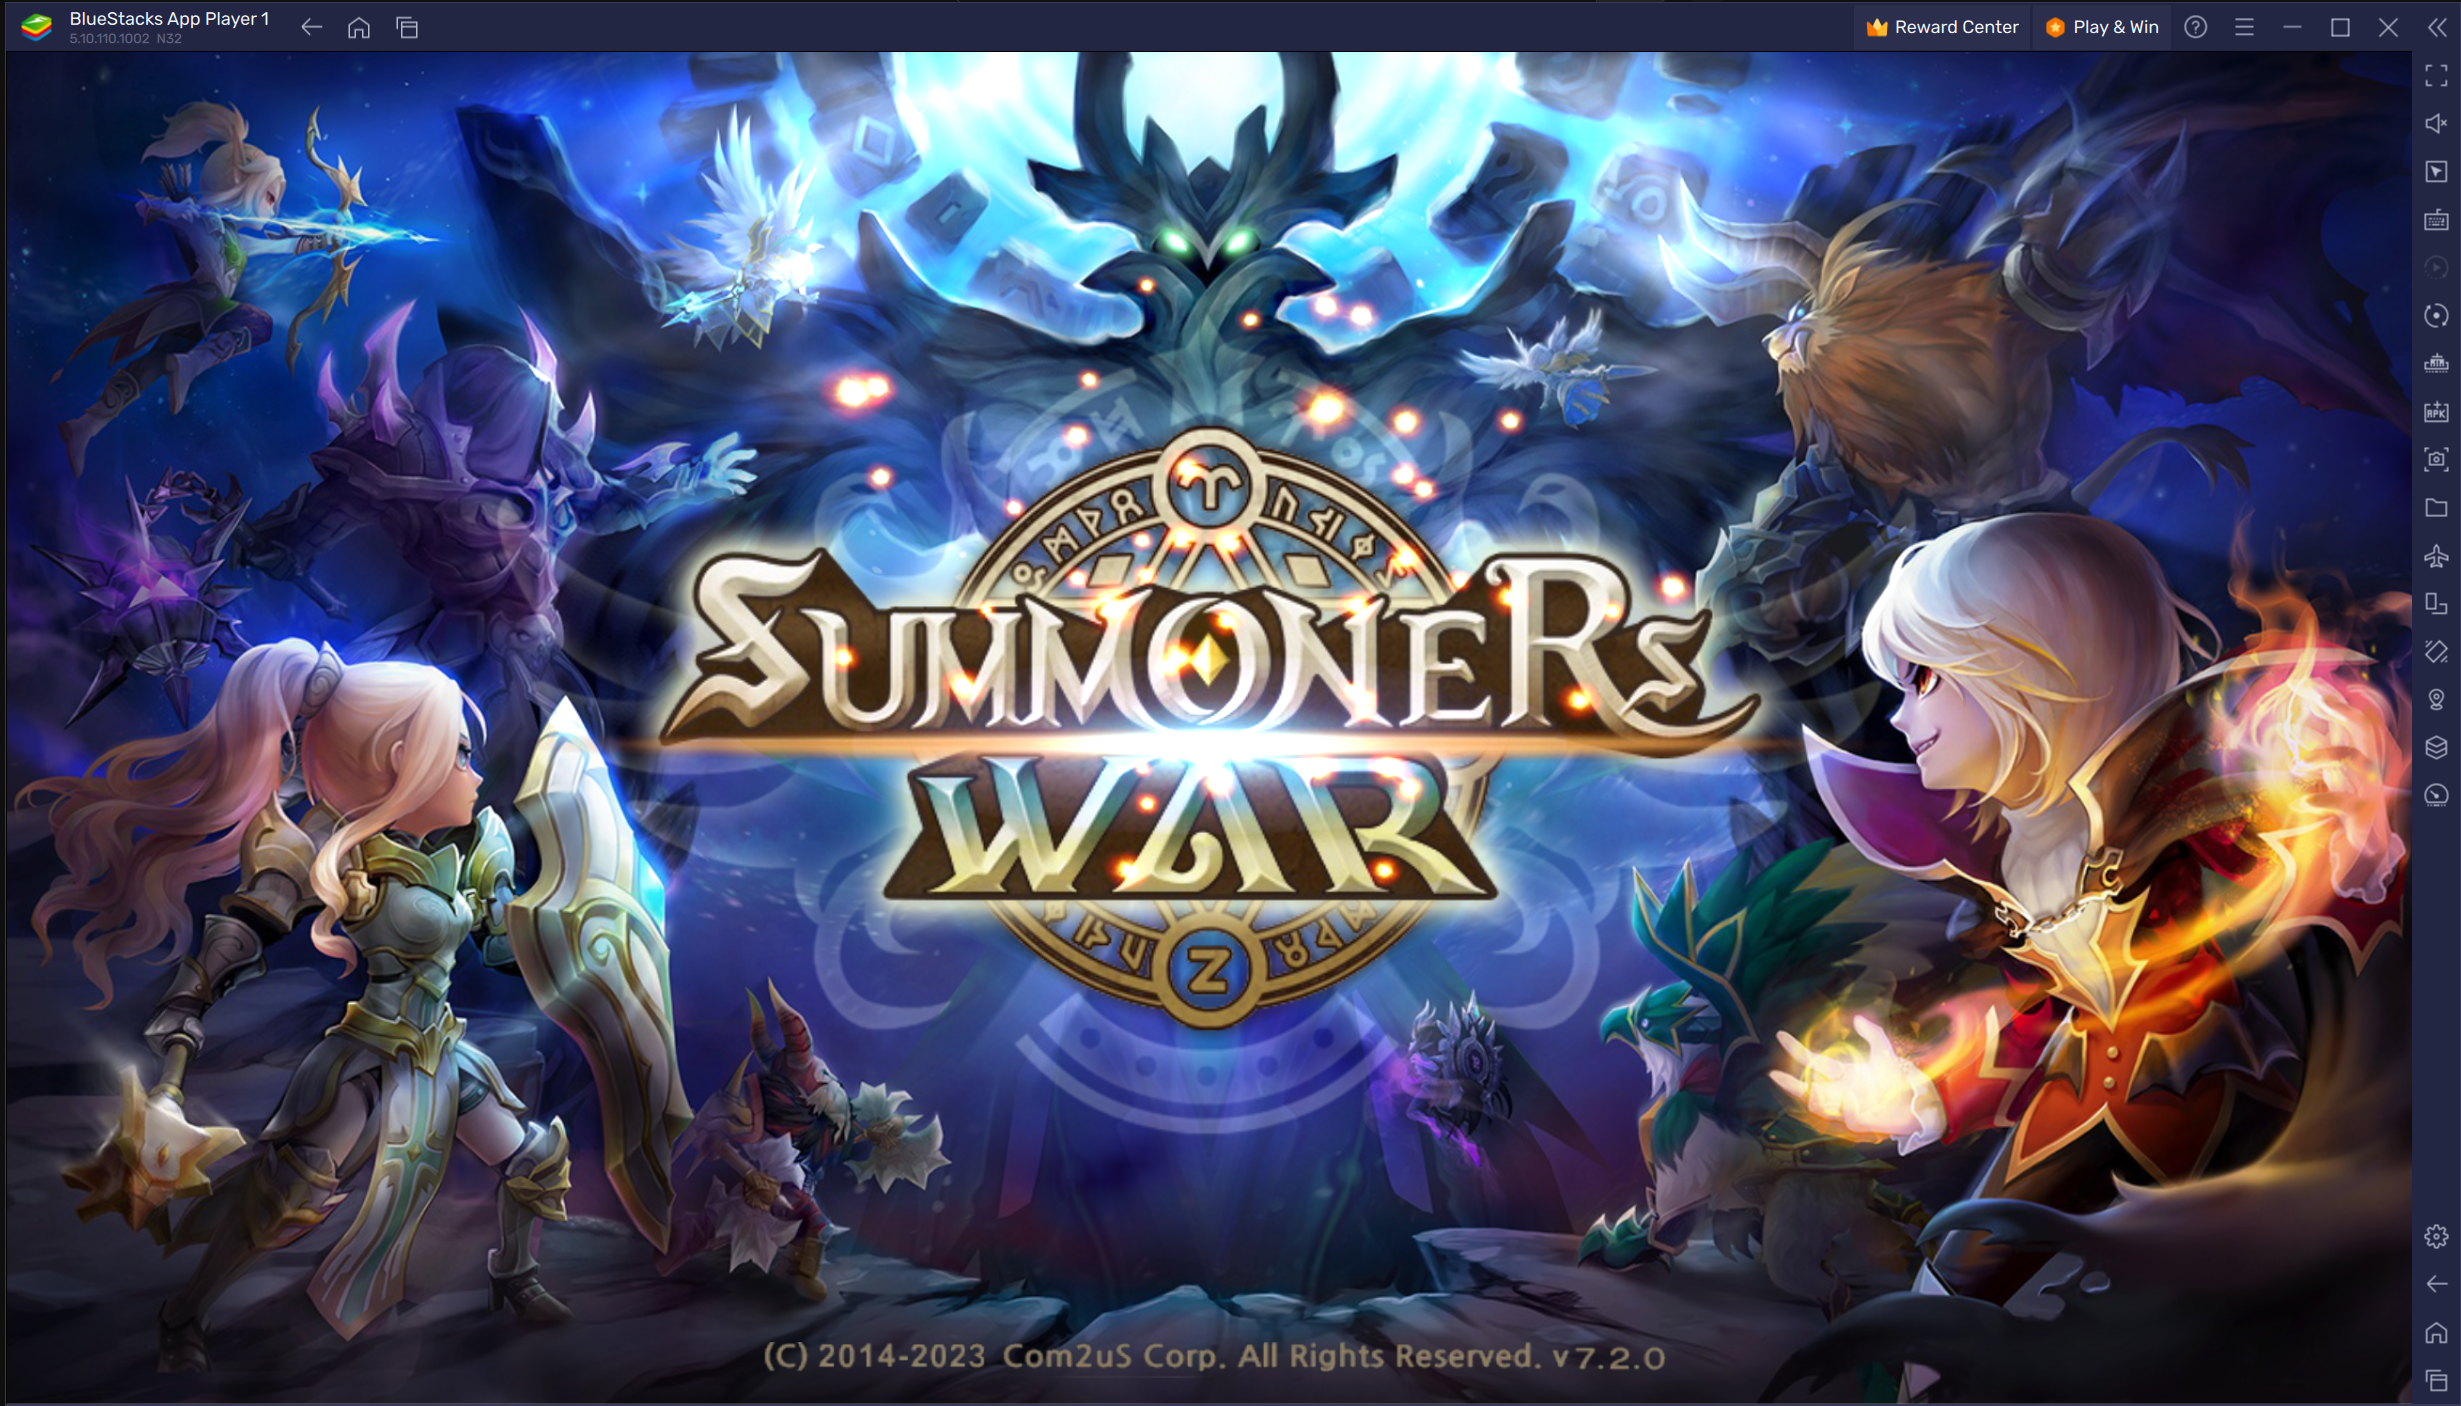 Panduan Bermain Game Summoners War: Sky Arena di PC